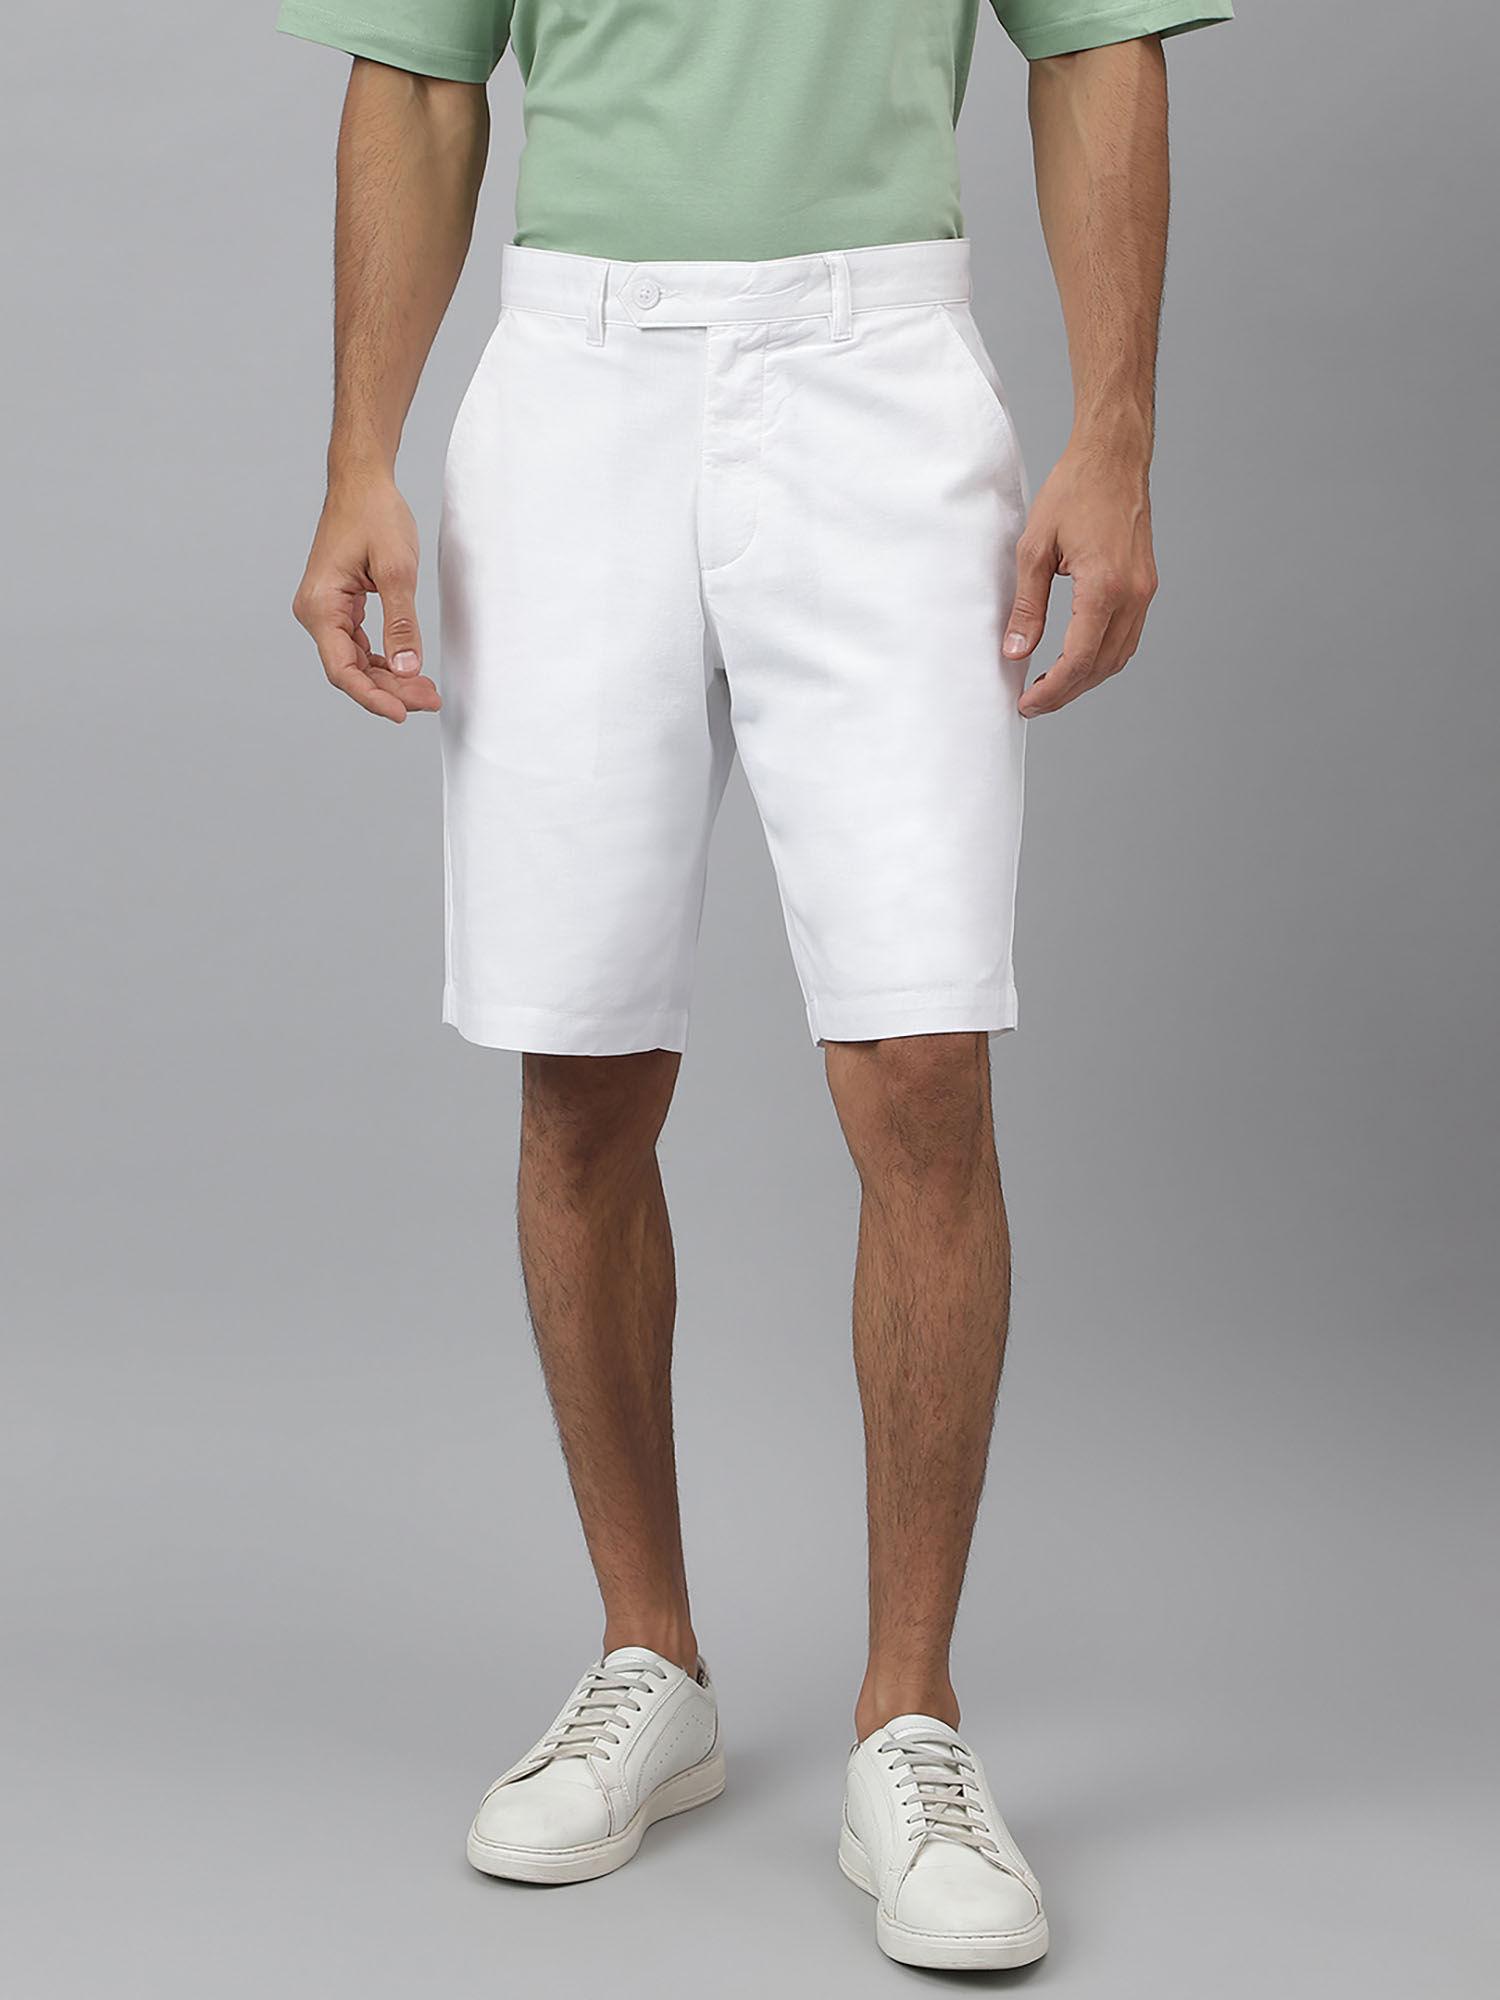 interlude-cotton ripstop white shorts